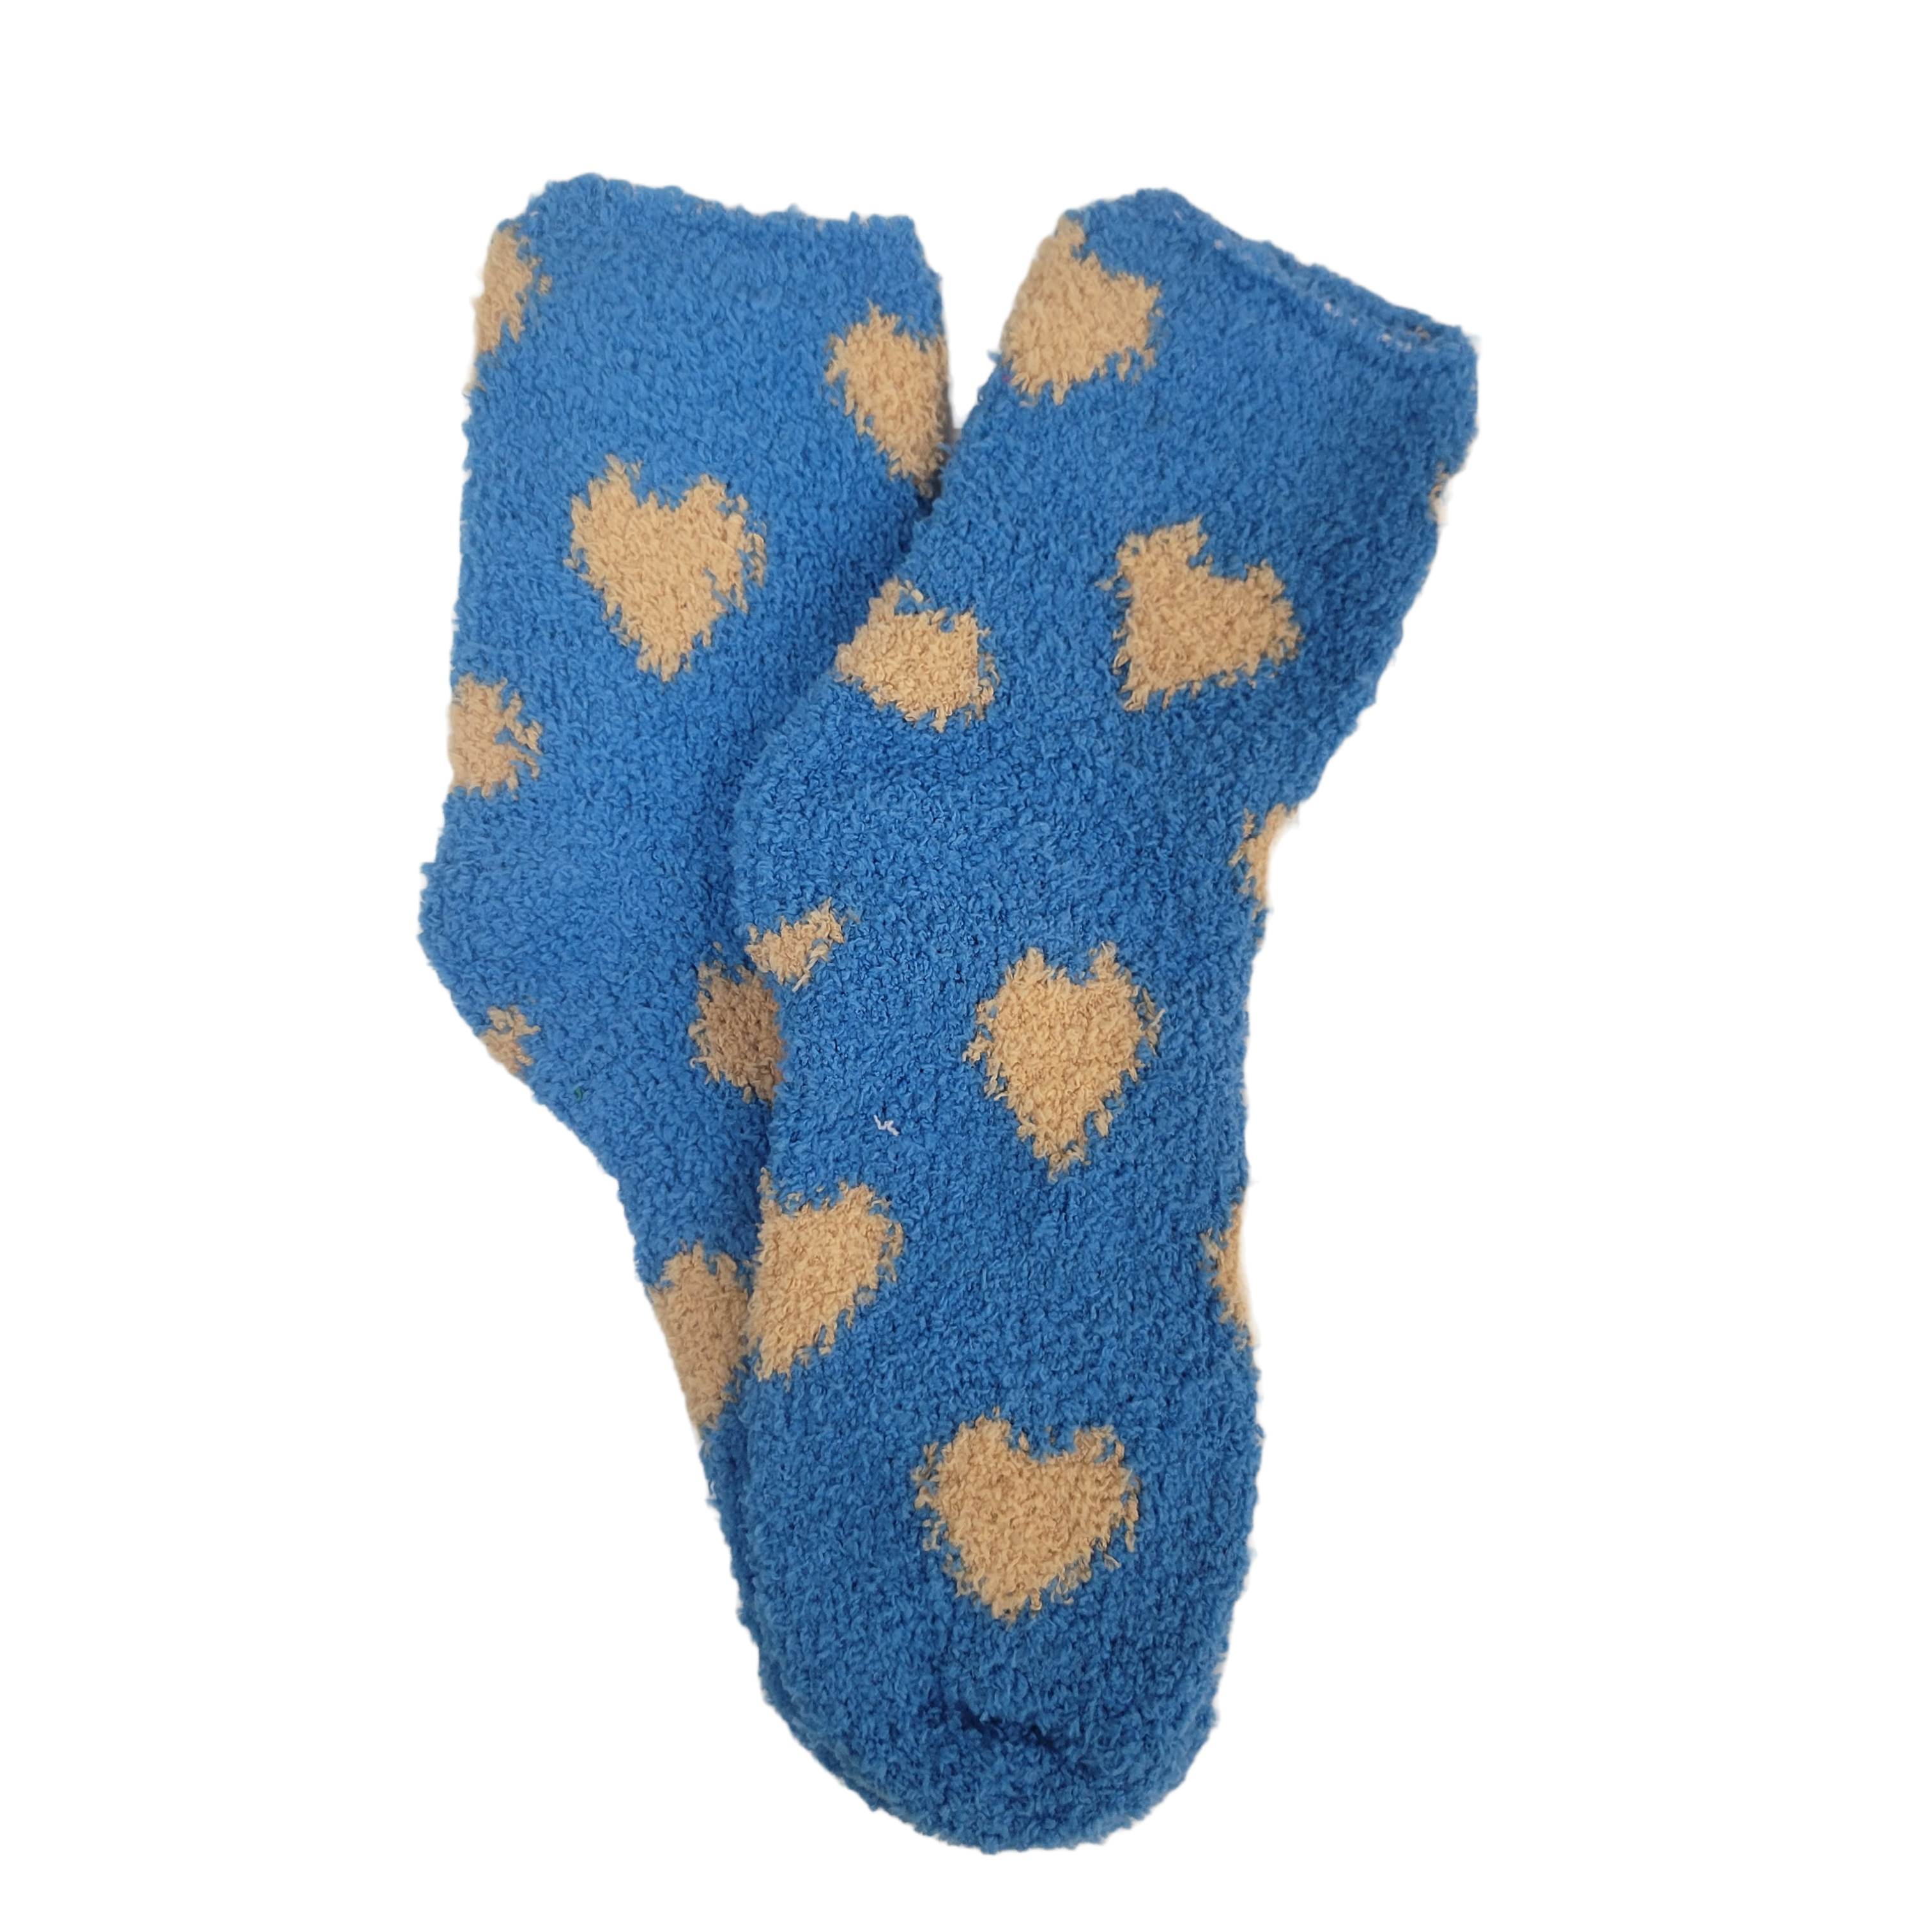 Heart Patterned Fuzzy Socks from the Sock Panda (Blue w/Tan)